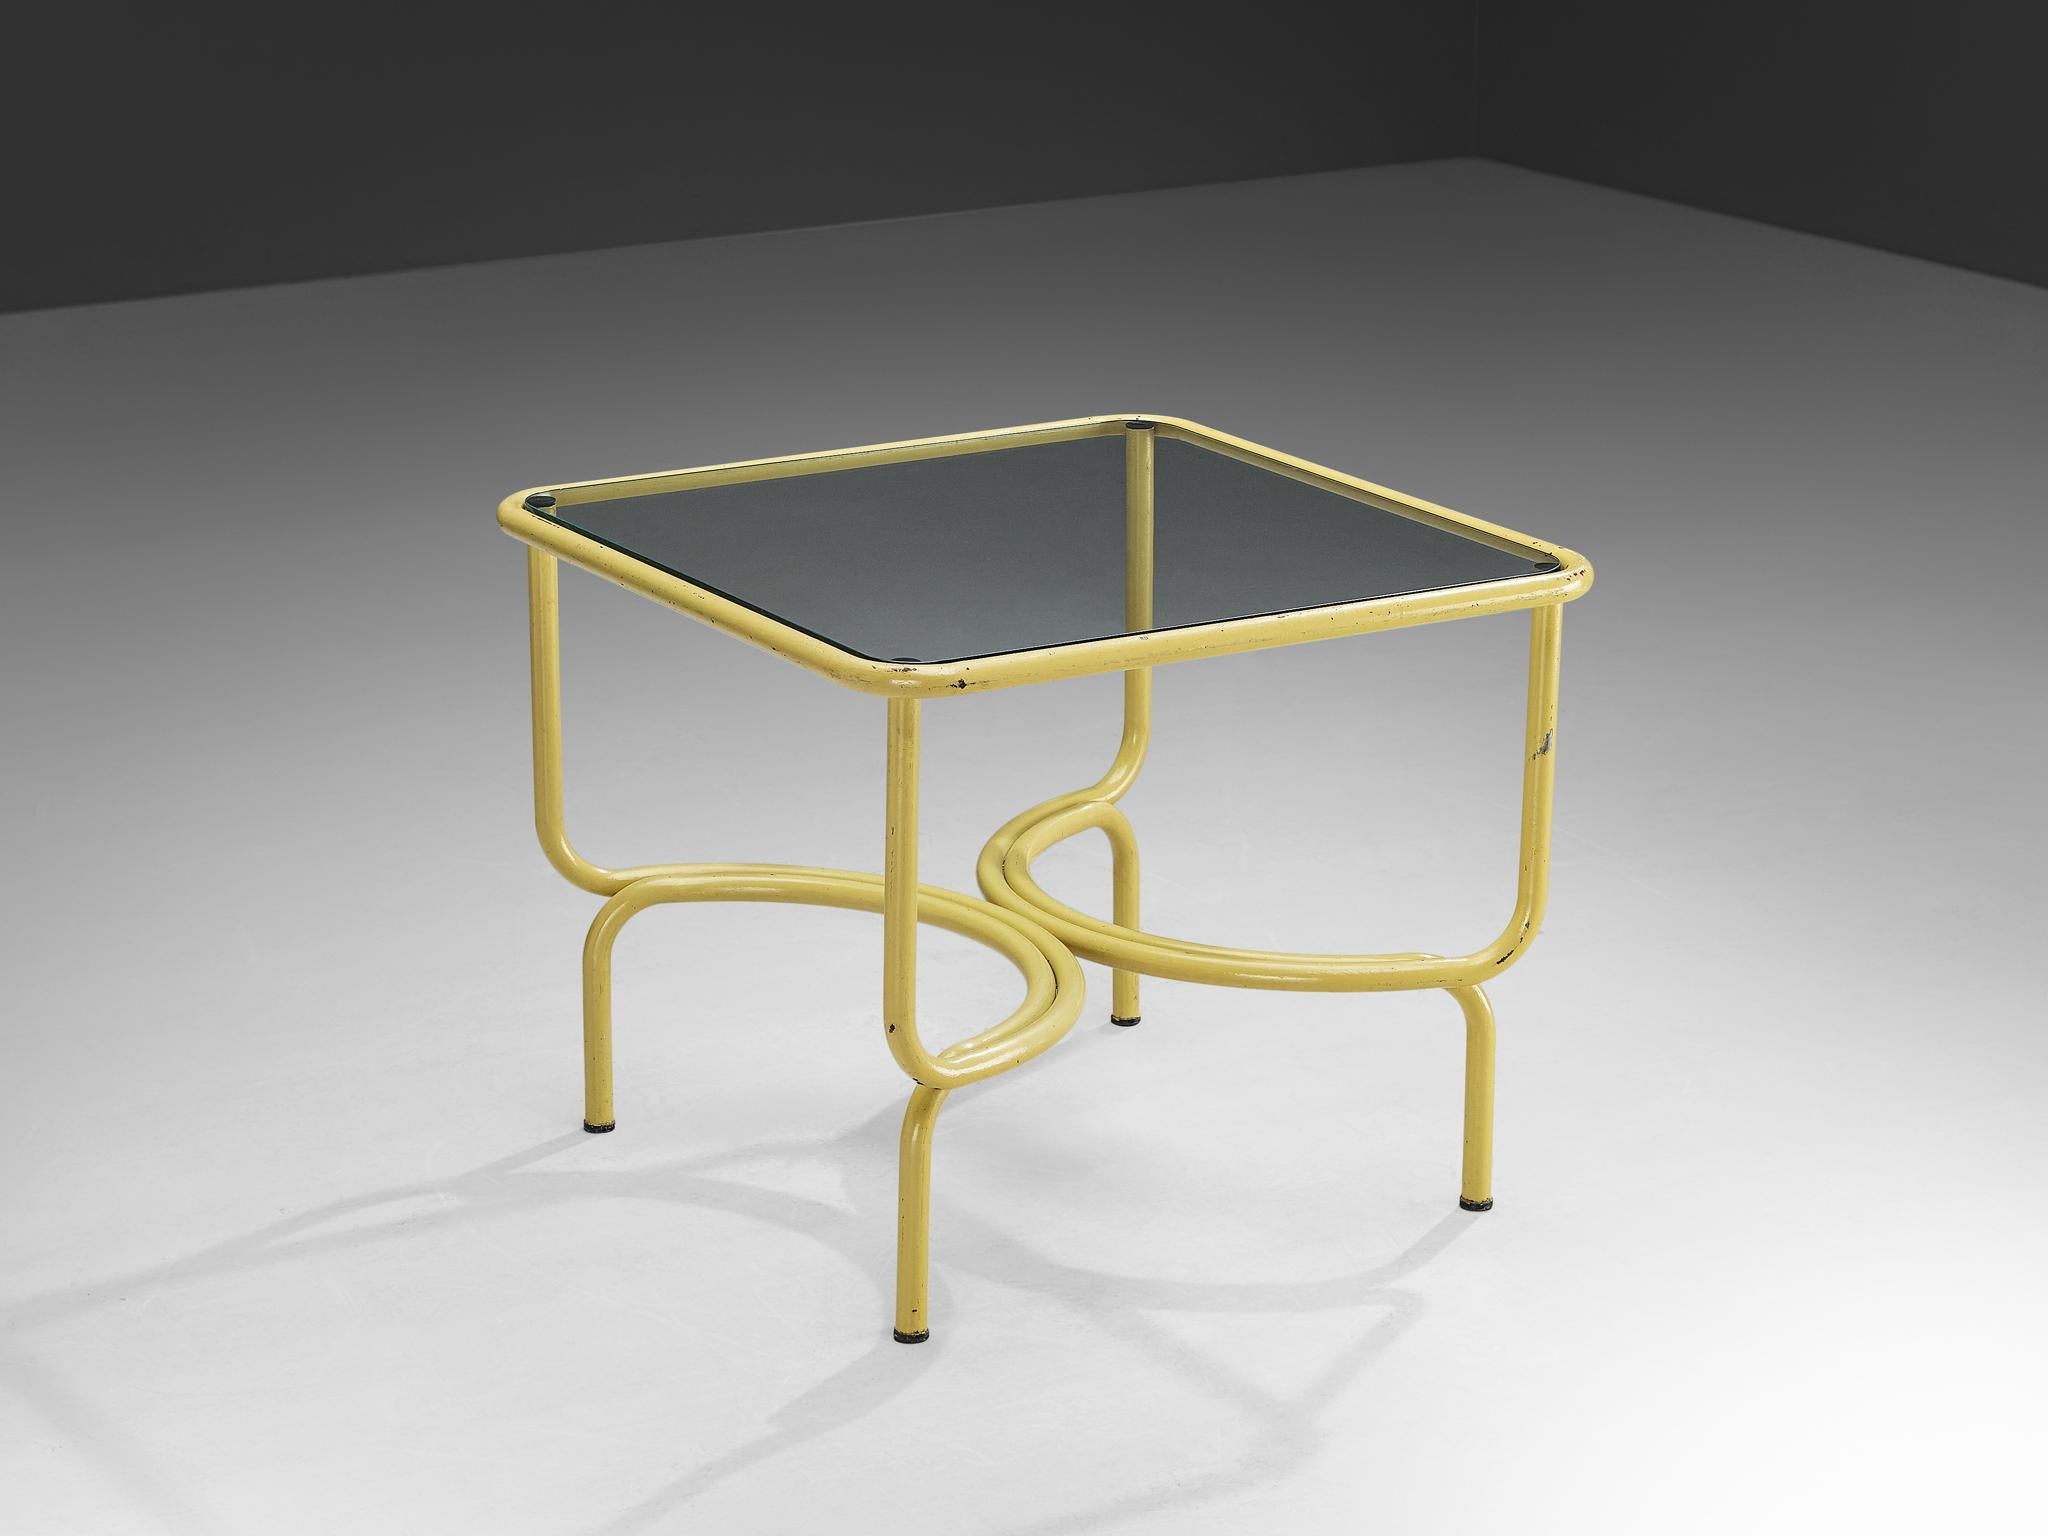 Gae Aulenti pour Poltronova Locus Solus, métal laqué jaune, Italie, 1963

La table Locus Solus, conçue par le visionnaire Gae Aulenti en 1963. Cette pièce emblématique, réalisée en métal laqué jaune, est exaltante dans sa forme et polyvalente, ce